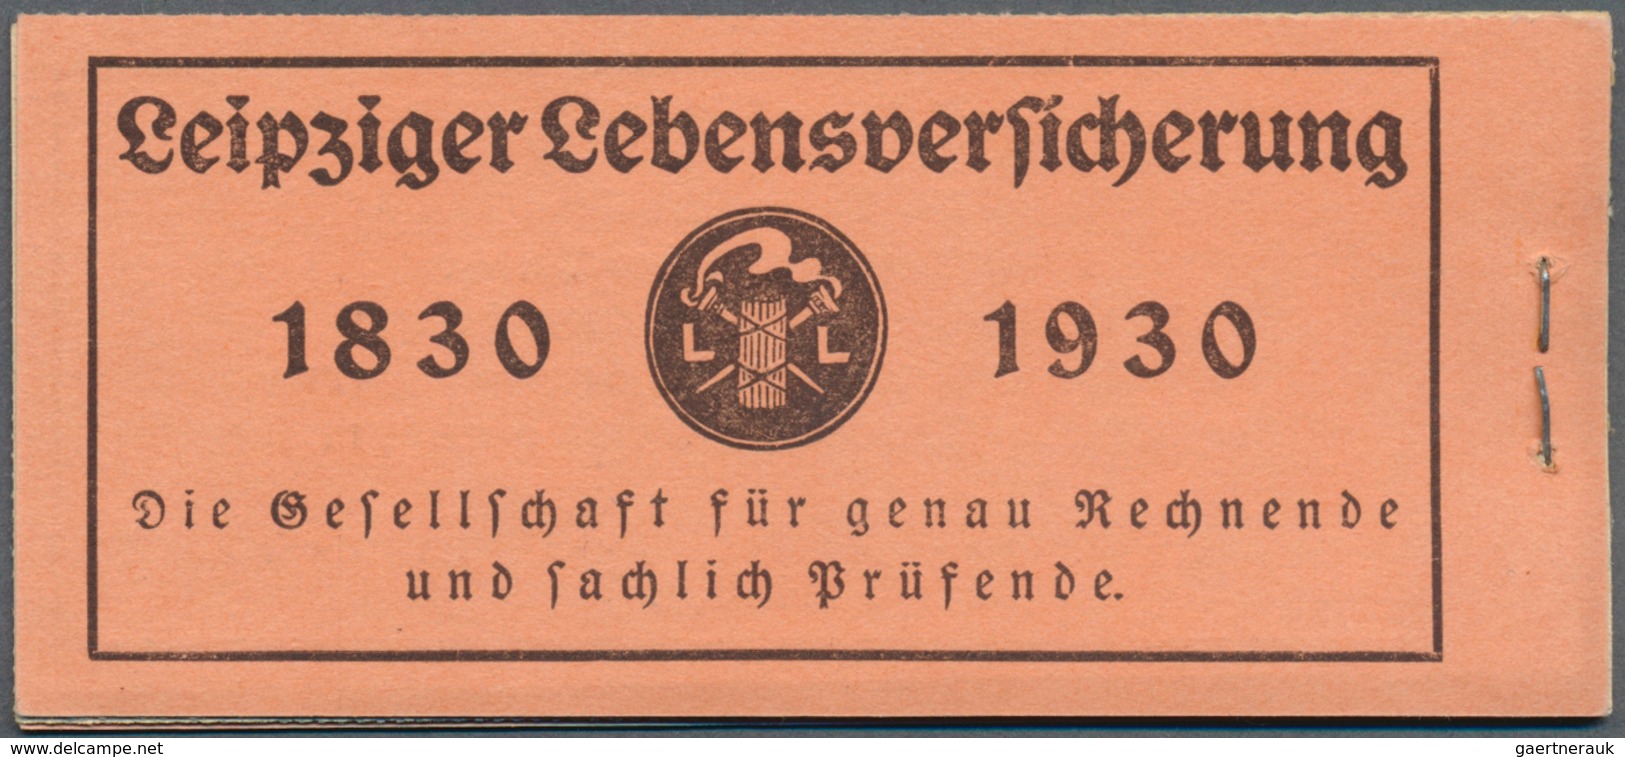 18228 Deutsches Reich - Markenheftchen: 1928, Markenheftchen Reichspräsidentenserie ONr. 10, Beinhaltet Da - Booklets